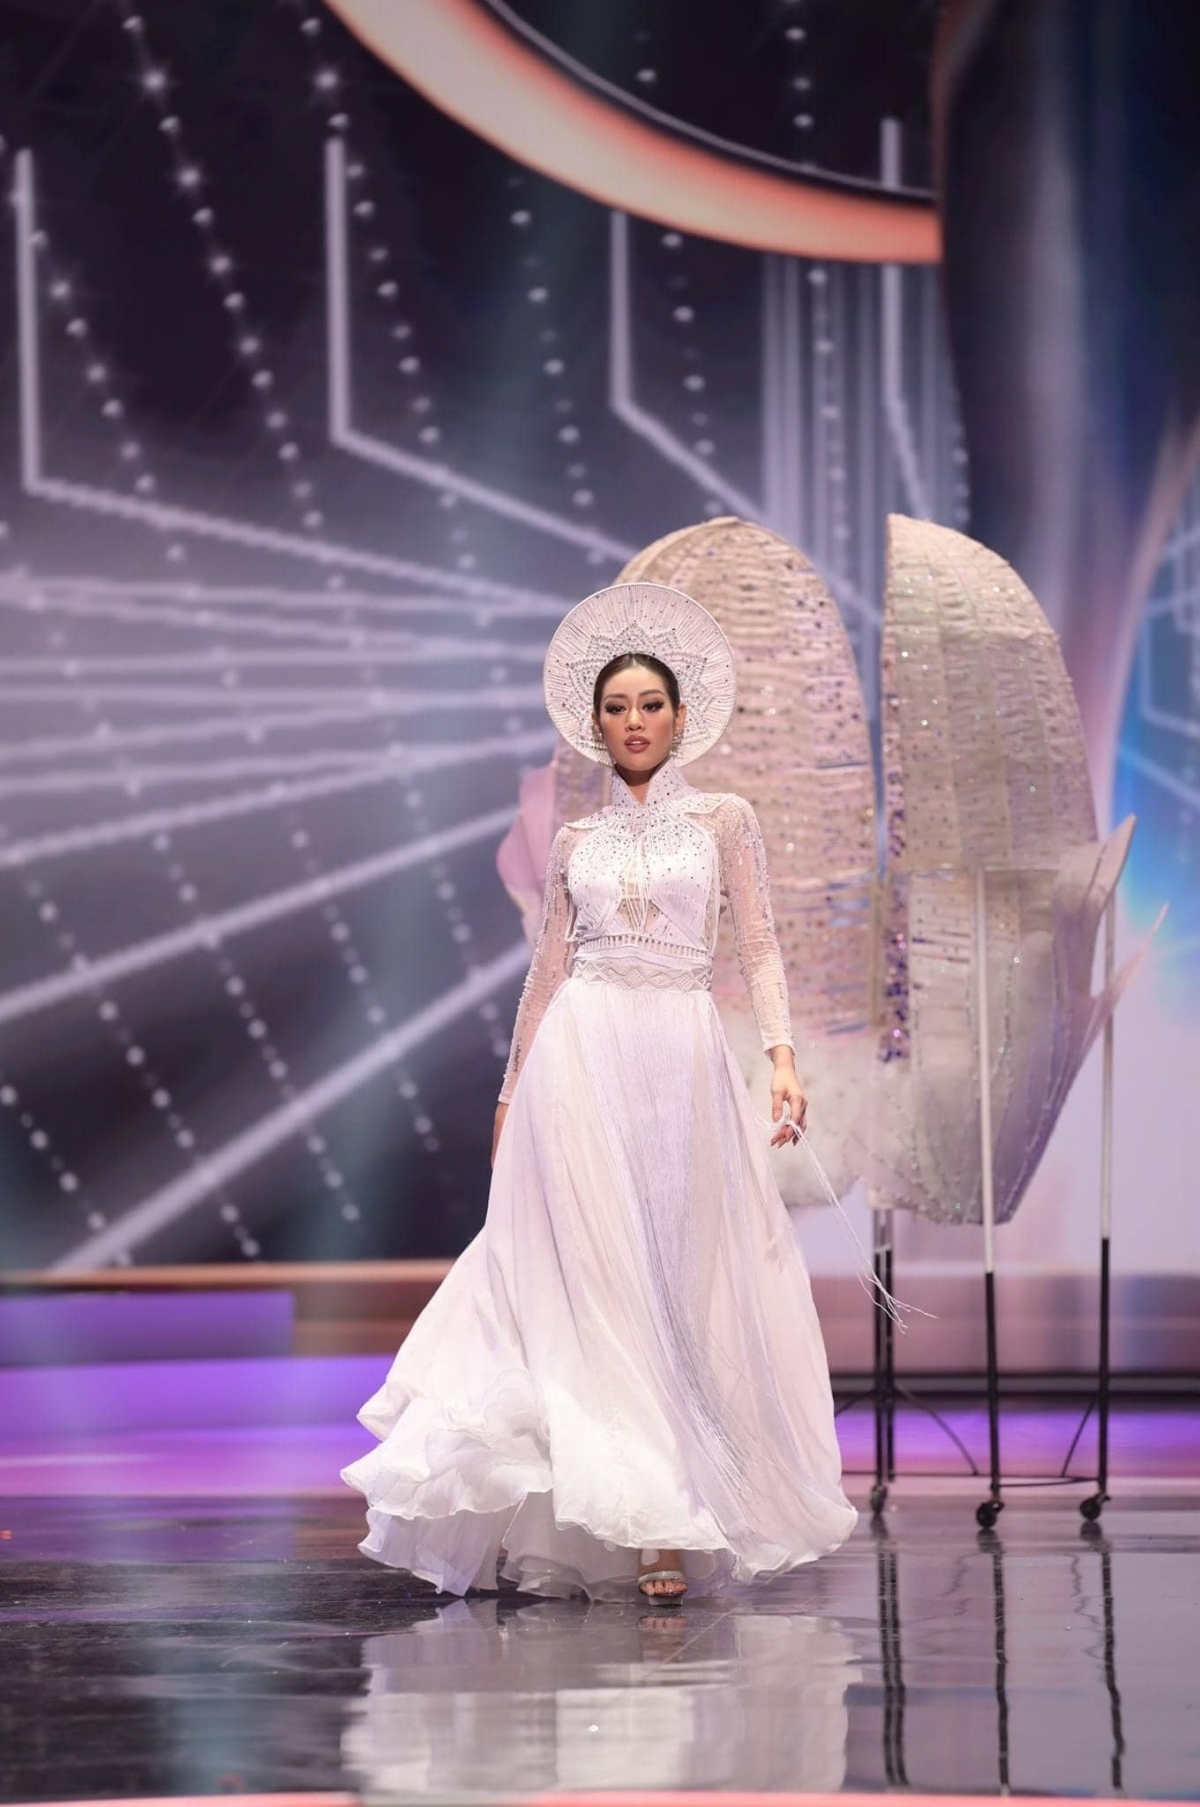 Màn xử lý 'đi vào lòng người' với sự cố 'cái kén' của Khánh Vân tại Miss Universe - Ảnh 2.